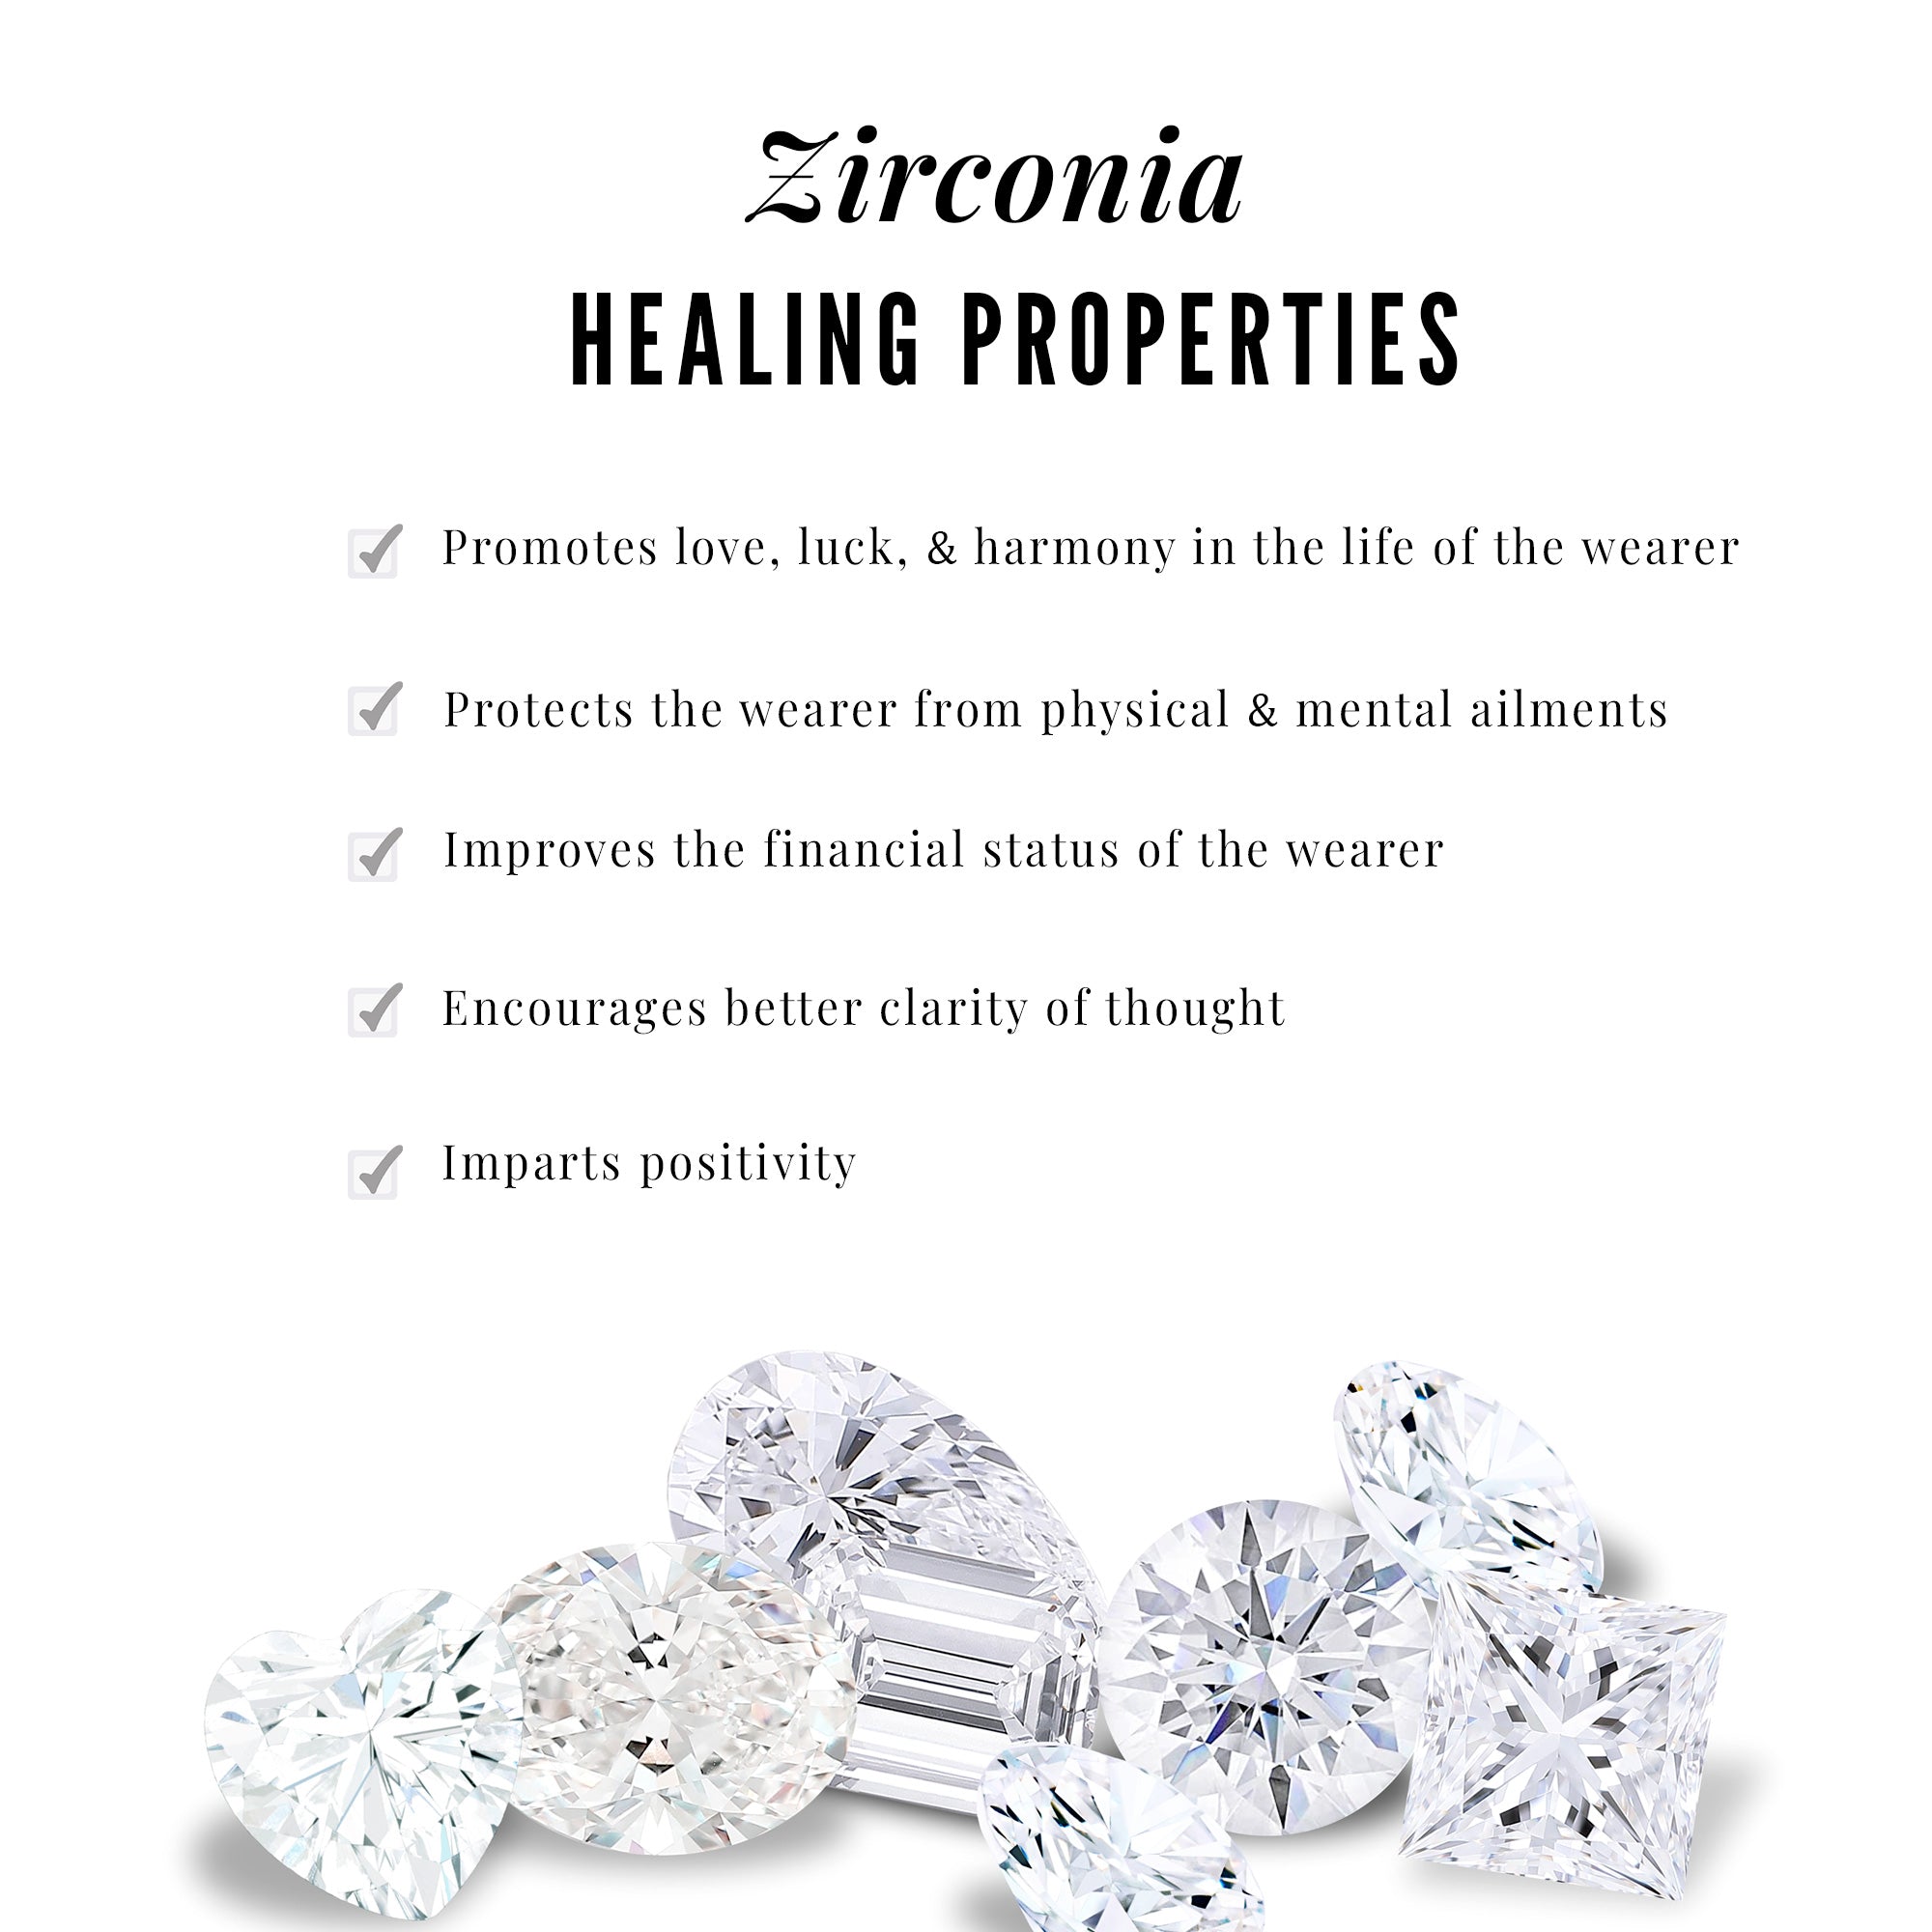 3/4 CT Certified Cubic Zirconia Solitaire Stud Earrings in Gold Zircon - ( AAAA ) - Quality - Rosec Jewels